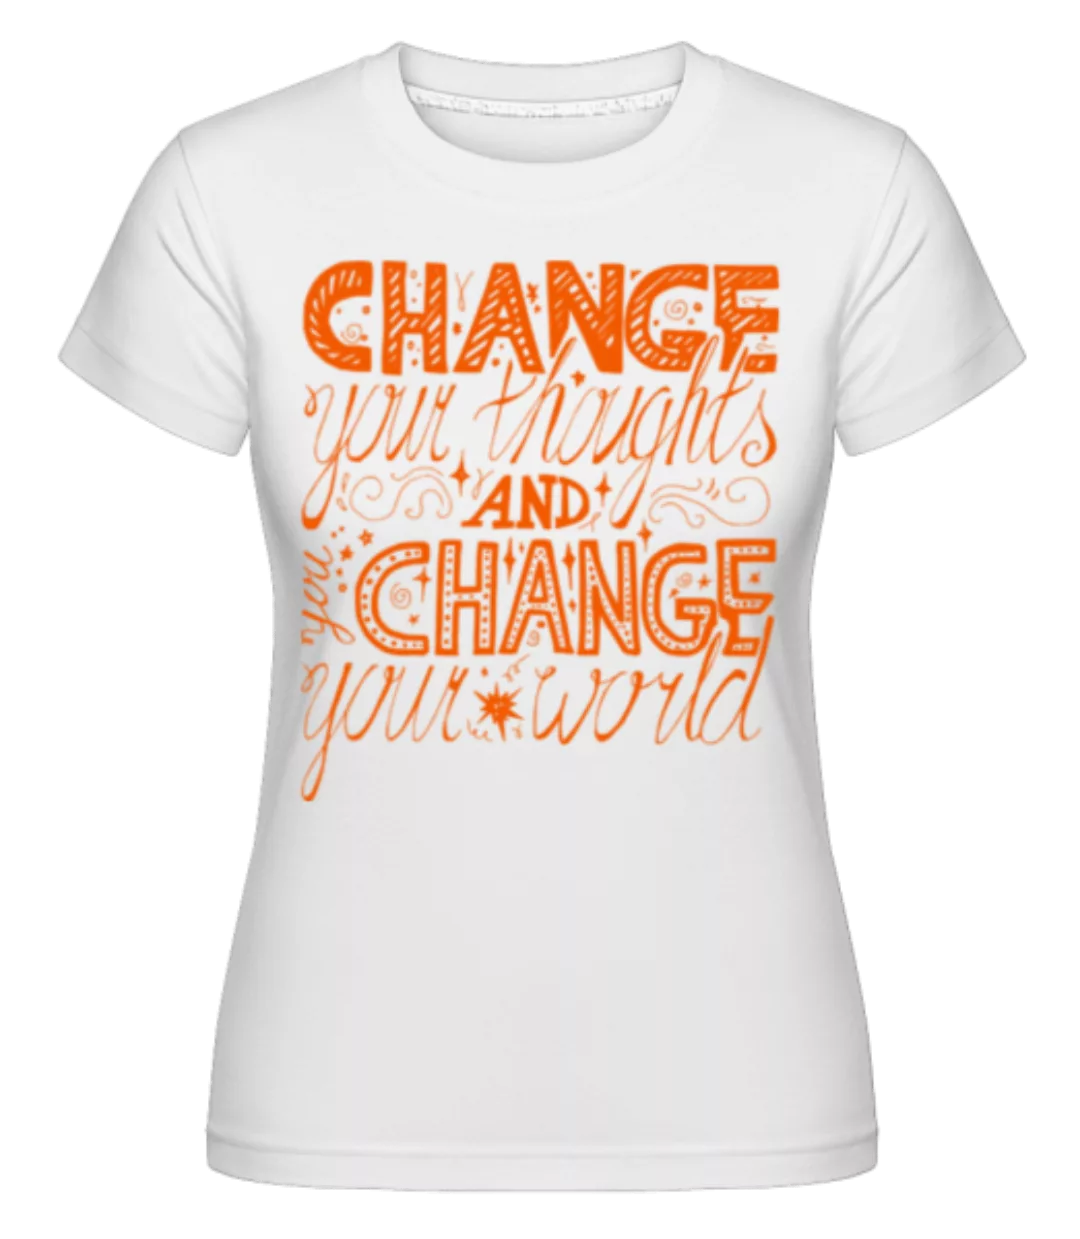 Change Your Thoughts And Change Your World · Shirtinator Frauen T-Shirt günstig online kaufen